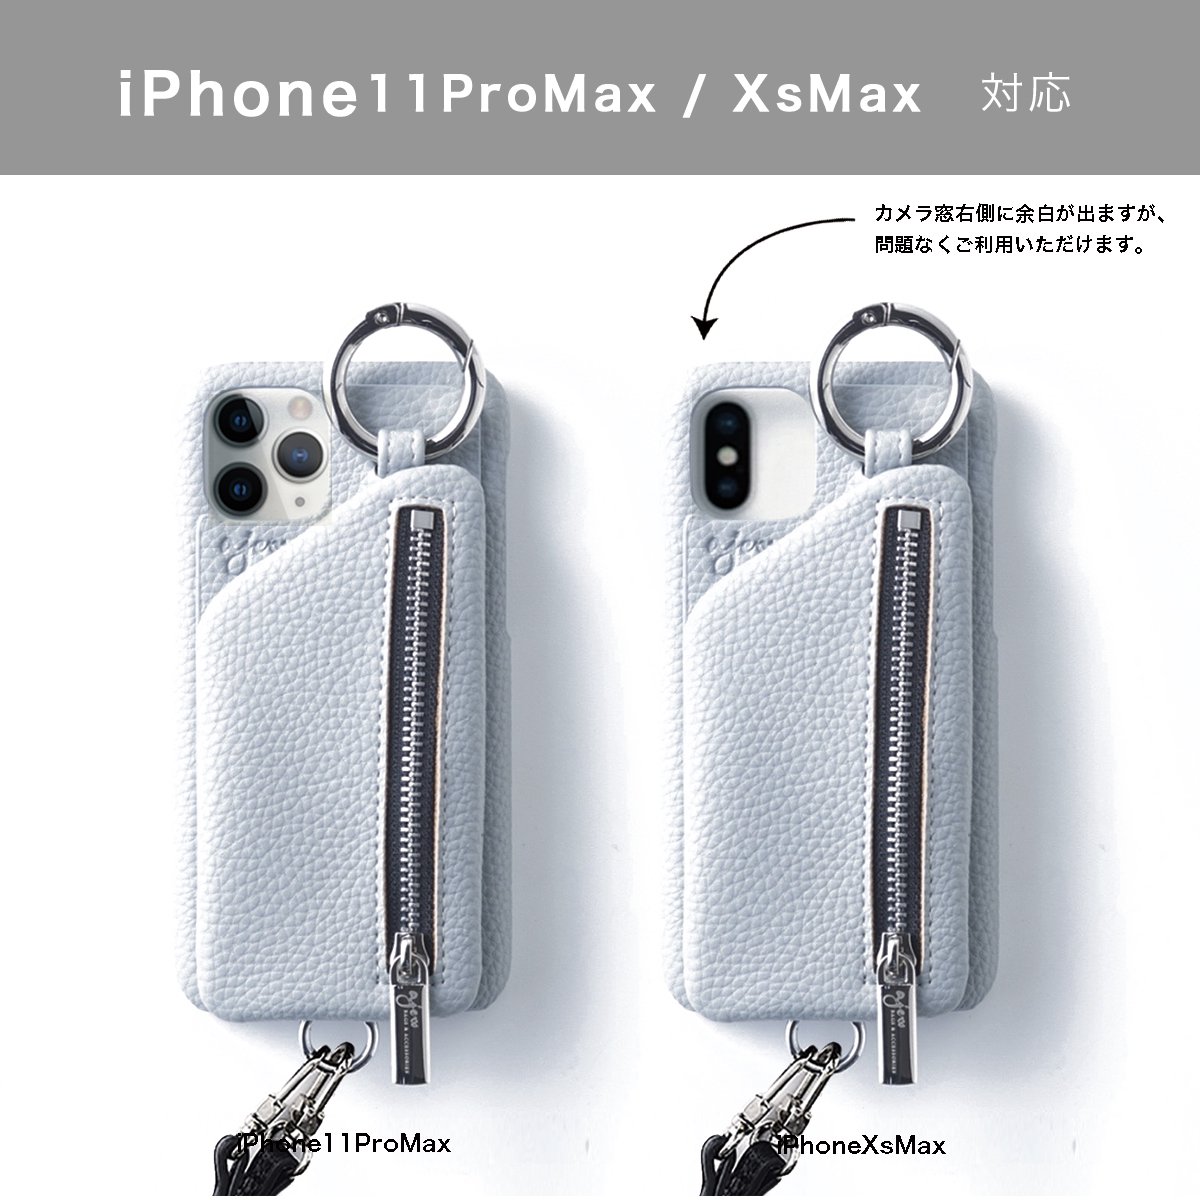 【ひも付き】 iPhoneXsMax.11ProMax共通対応 / blue (発送はご注文から3営業日以内です) - ajew